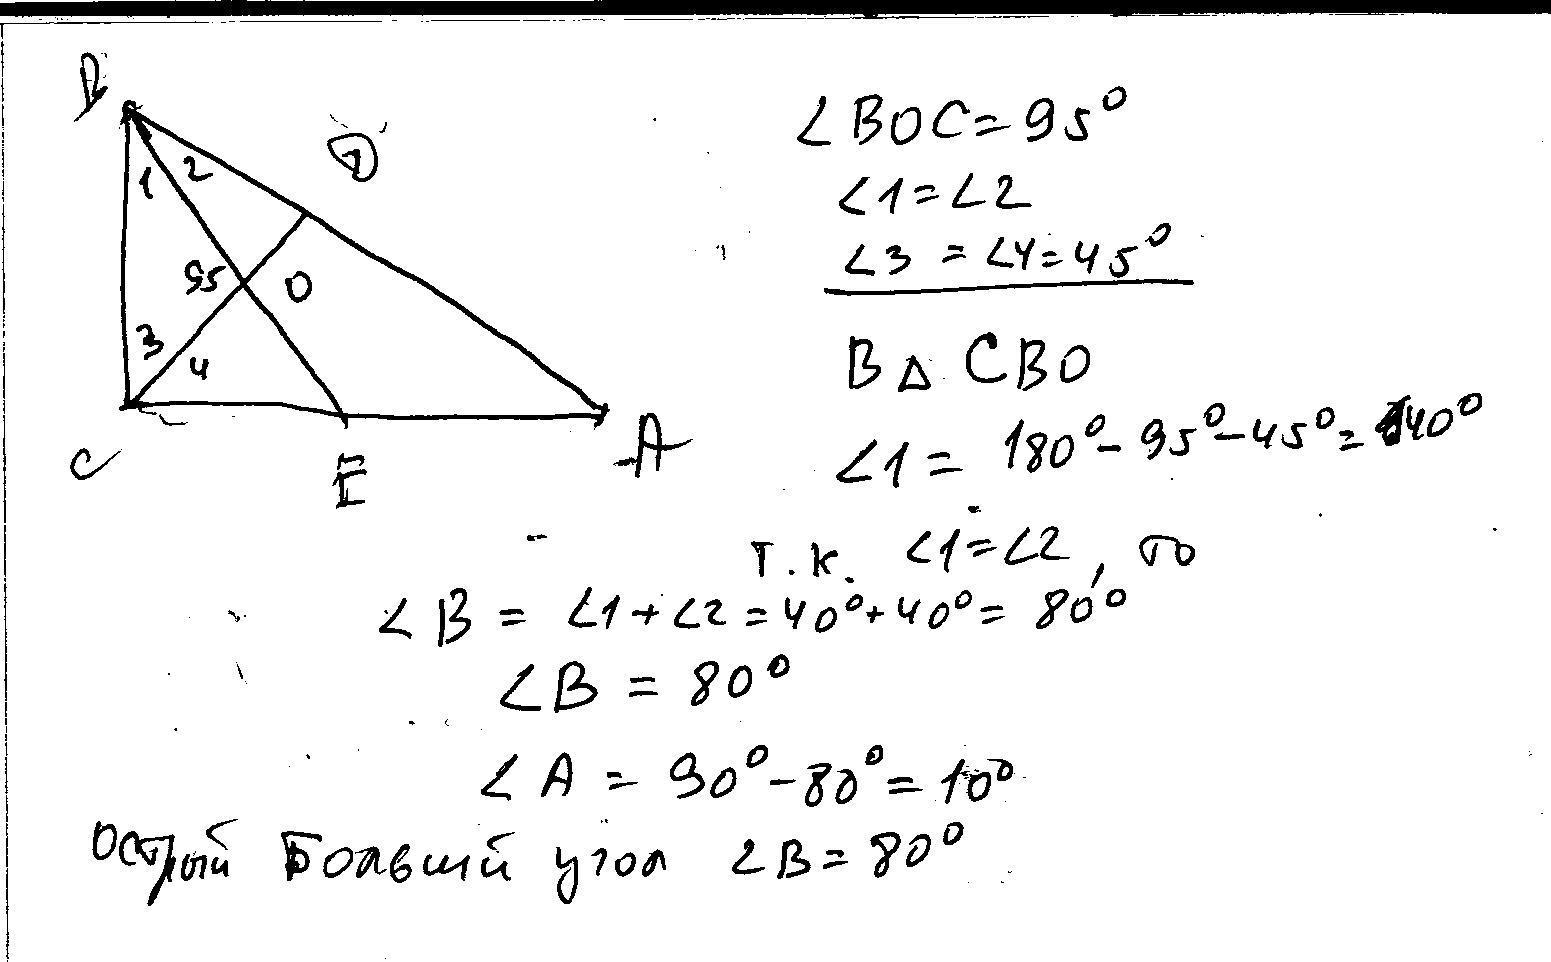 В прямого треугольнике авс c 90